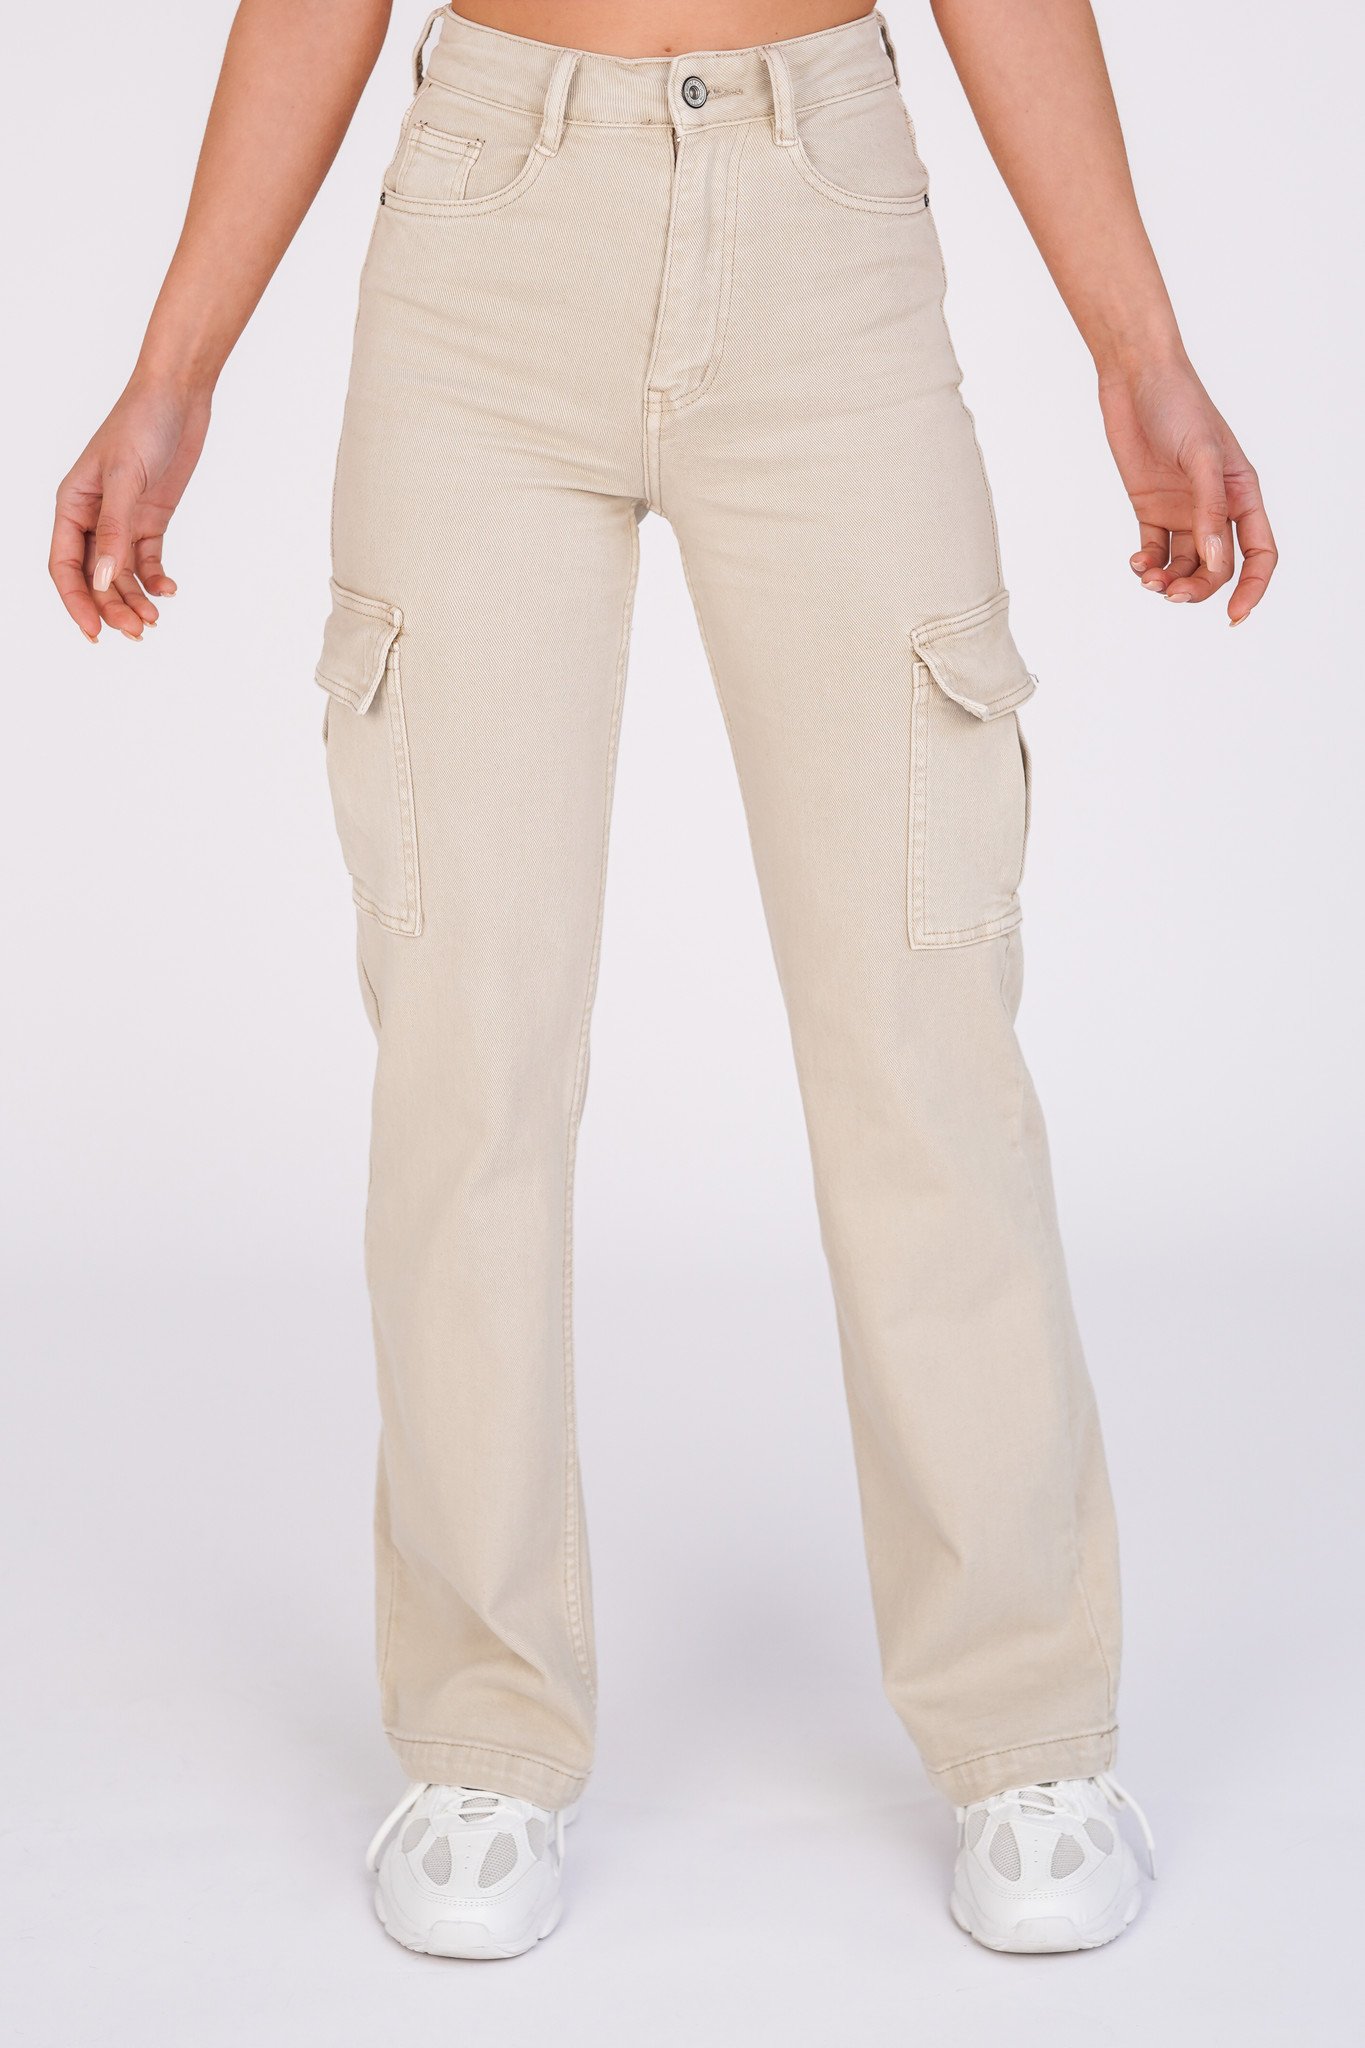 merk op Aannemelijk Parelachtig Cargo pants beige met stretch en high waist model | Esuals.nl - Esuals